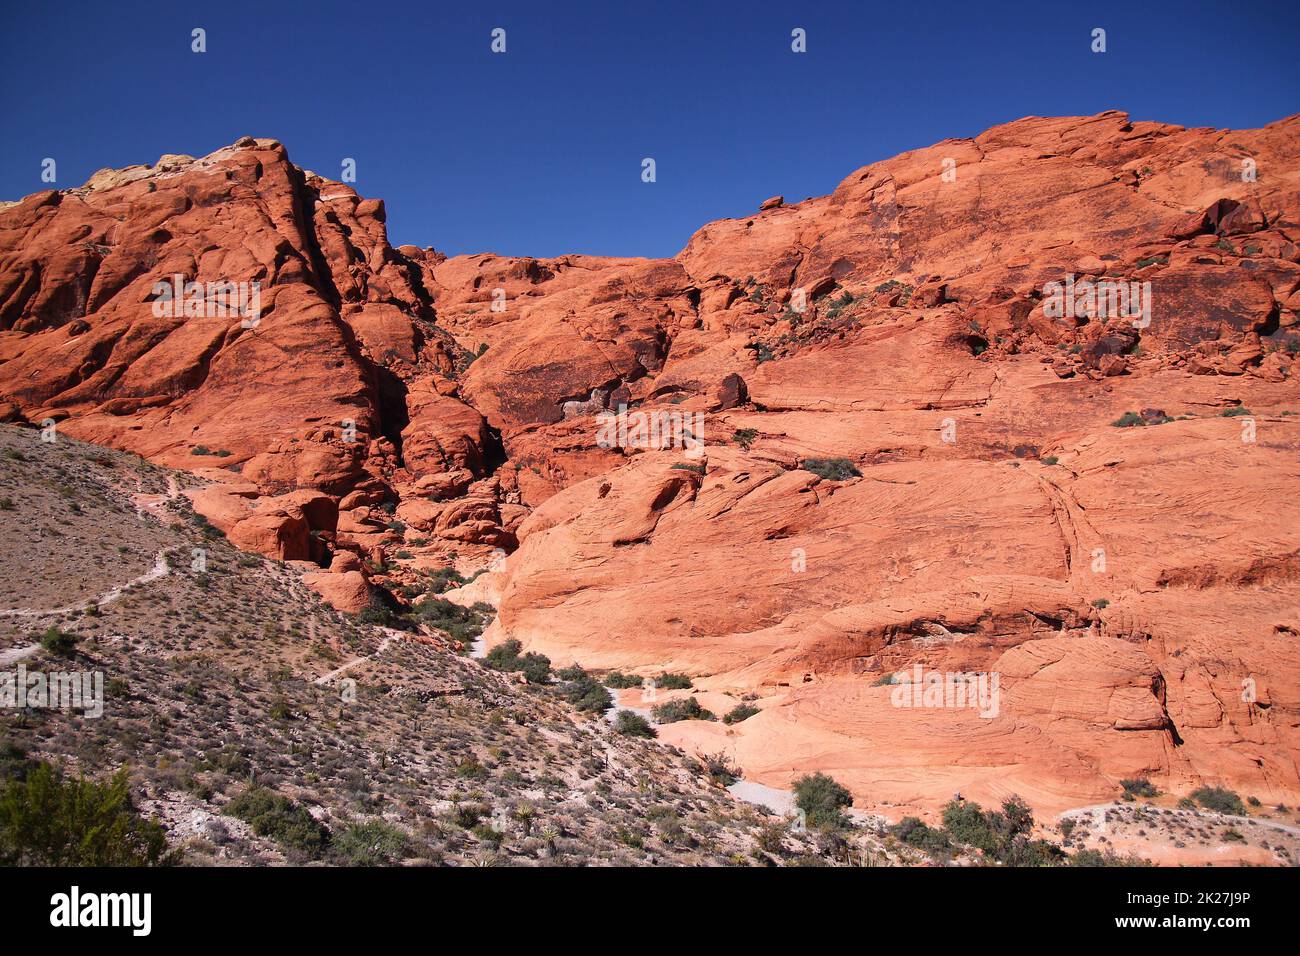 Die Red Rock Mountains mit den Gipfeln am klaren blauen Himmel im Canyon Stockfoto